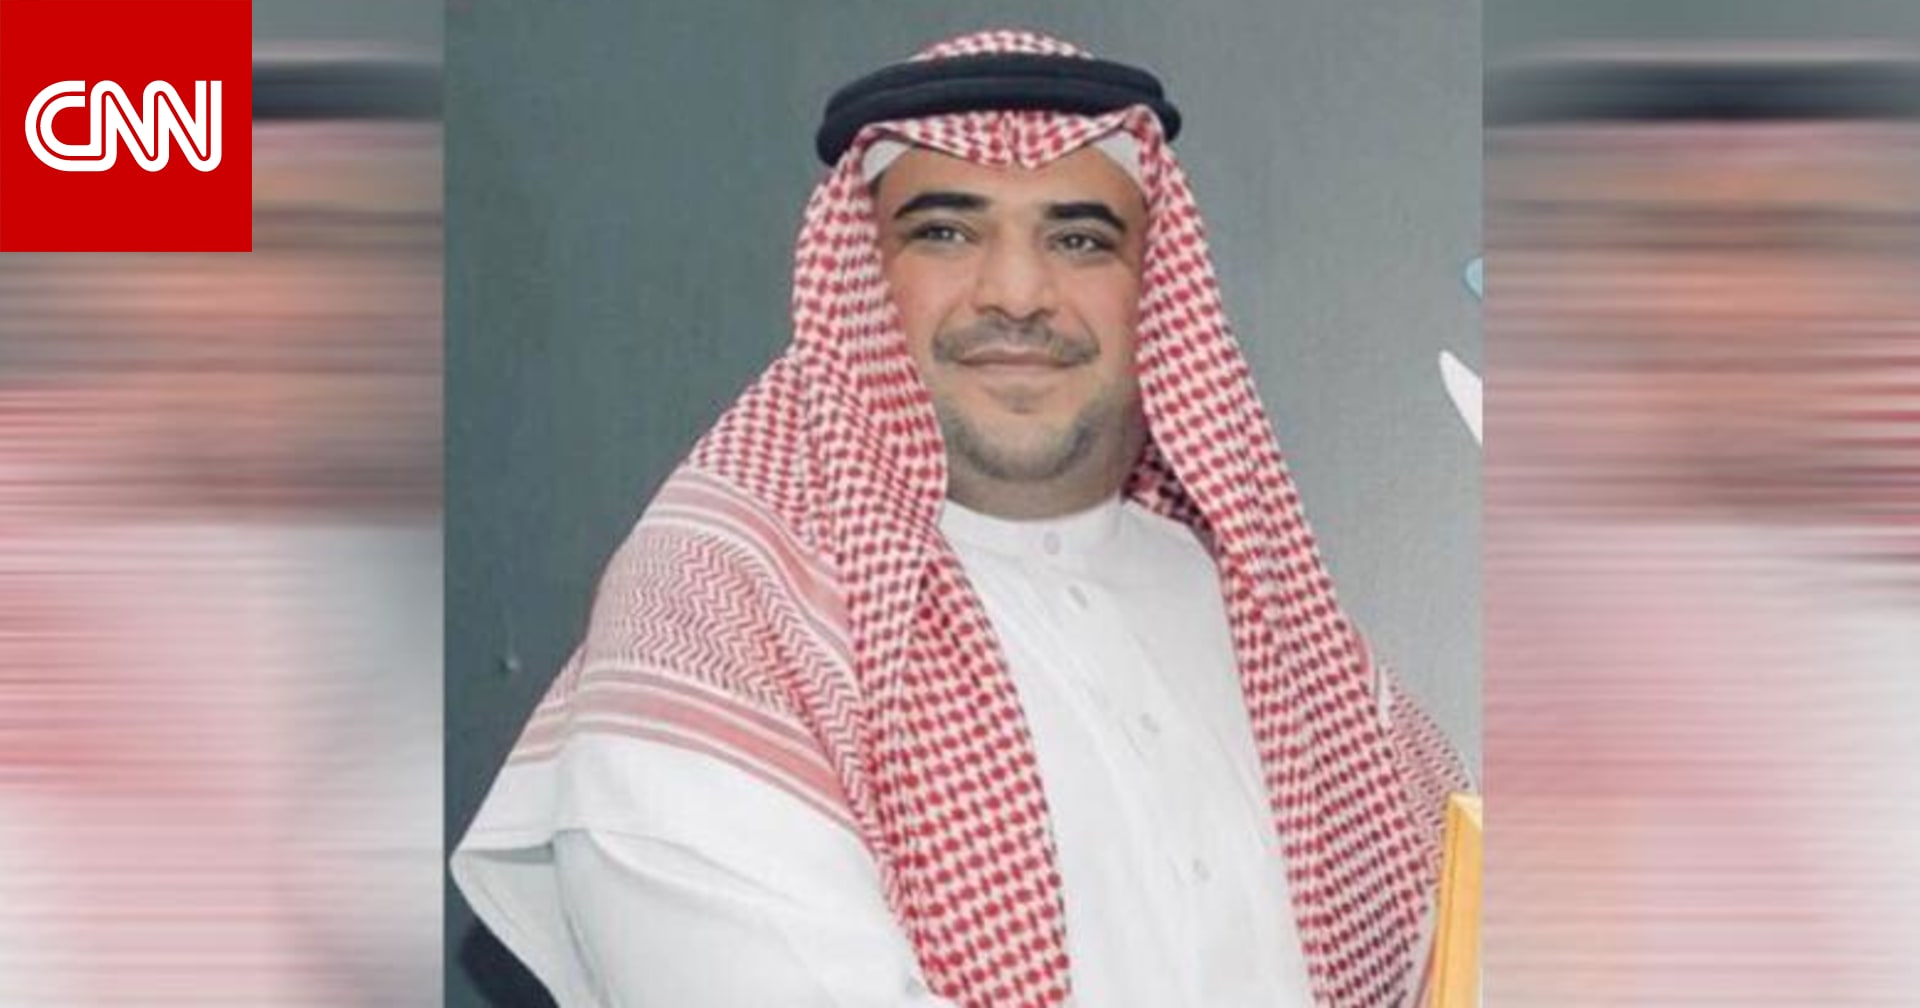 سعود القحطاني يعود للواجهة بين مغردين بعد إيقاف حسابه عن تويتر - CNN Arabic